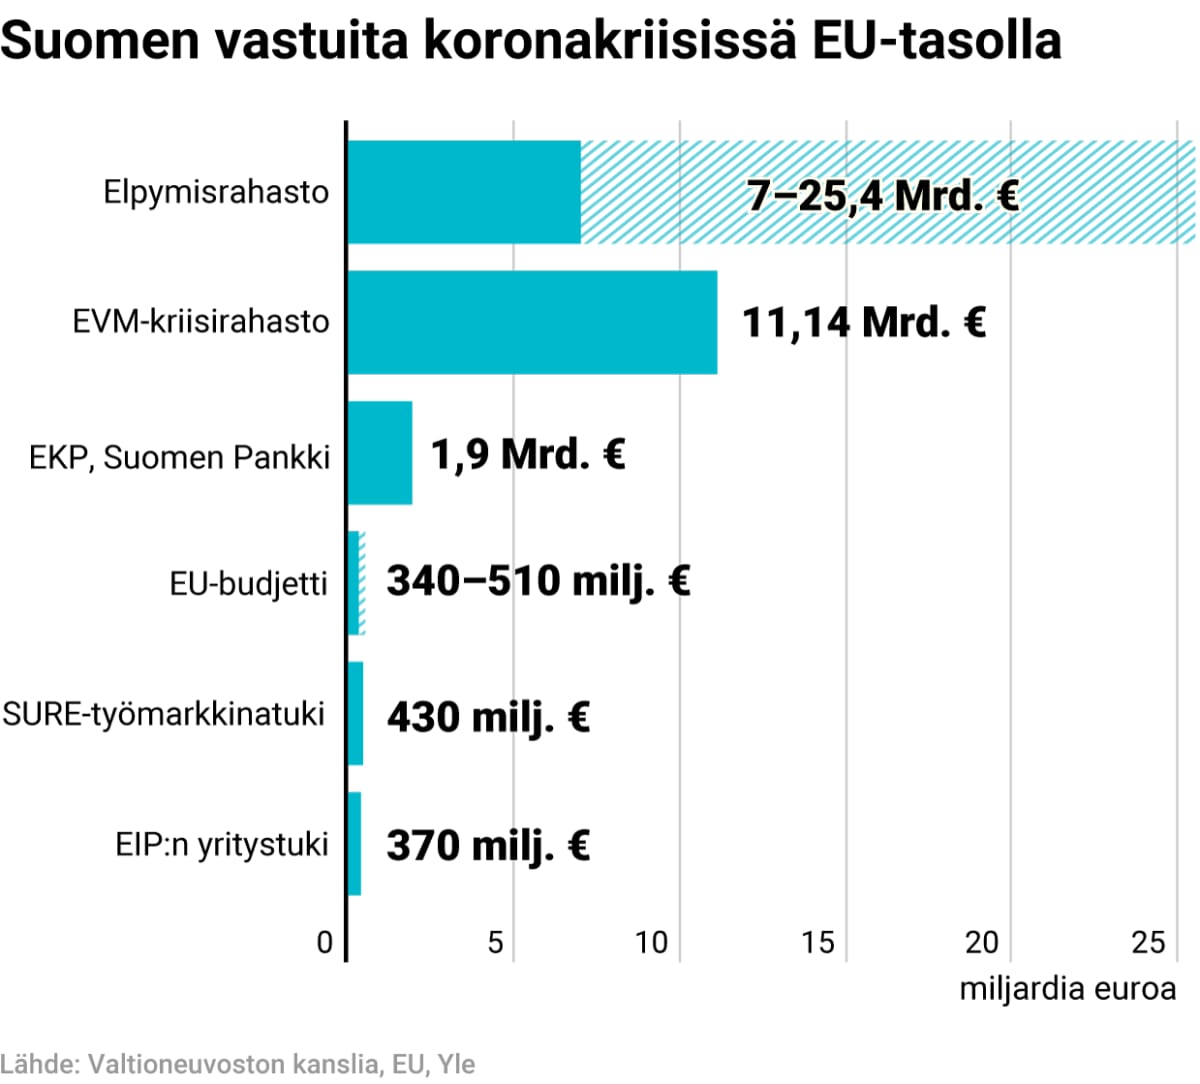 Suomen takausvastuut koronakriisissä EU-tasolla